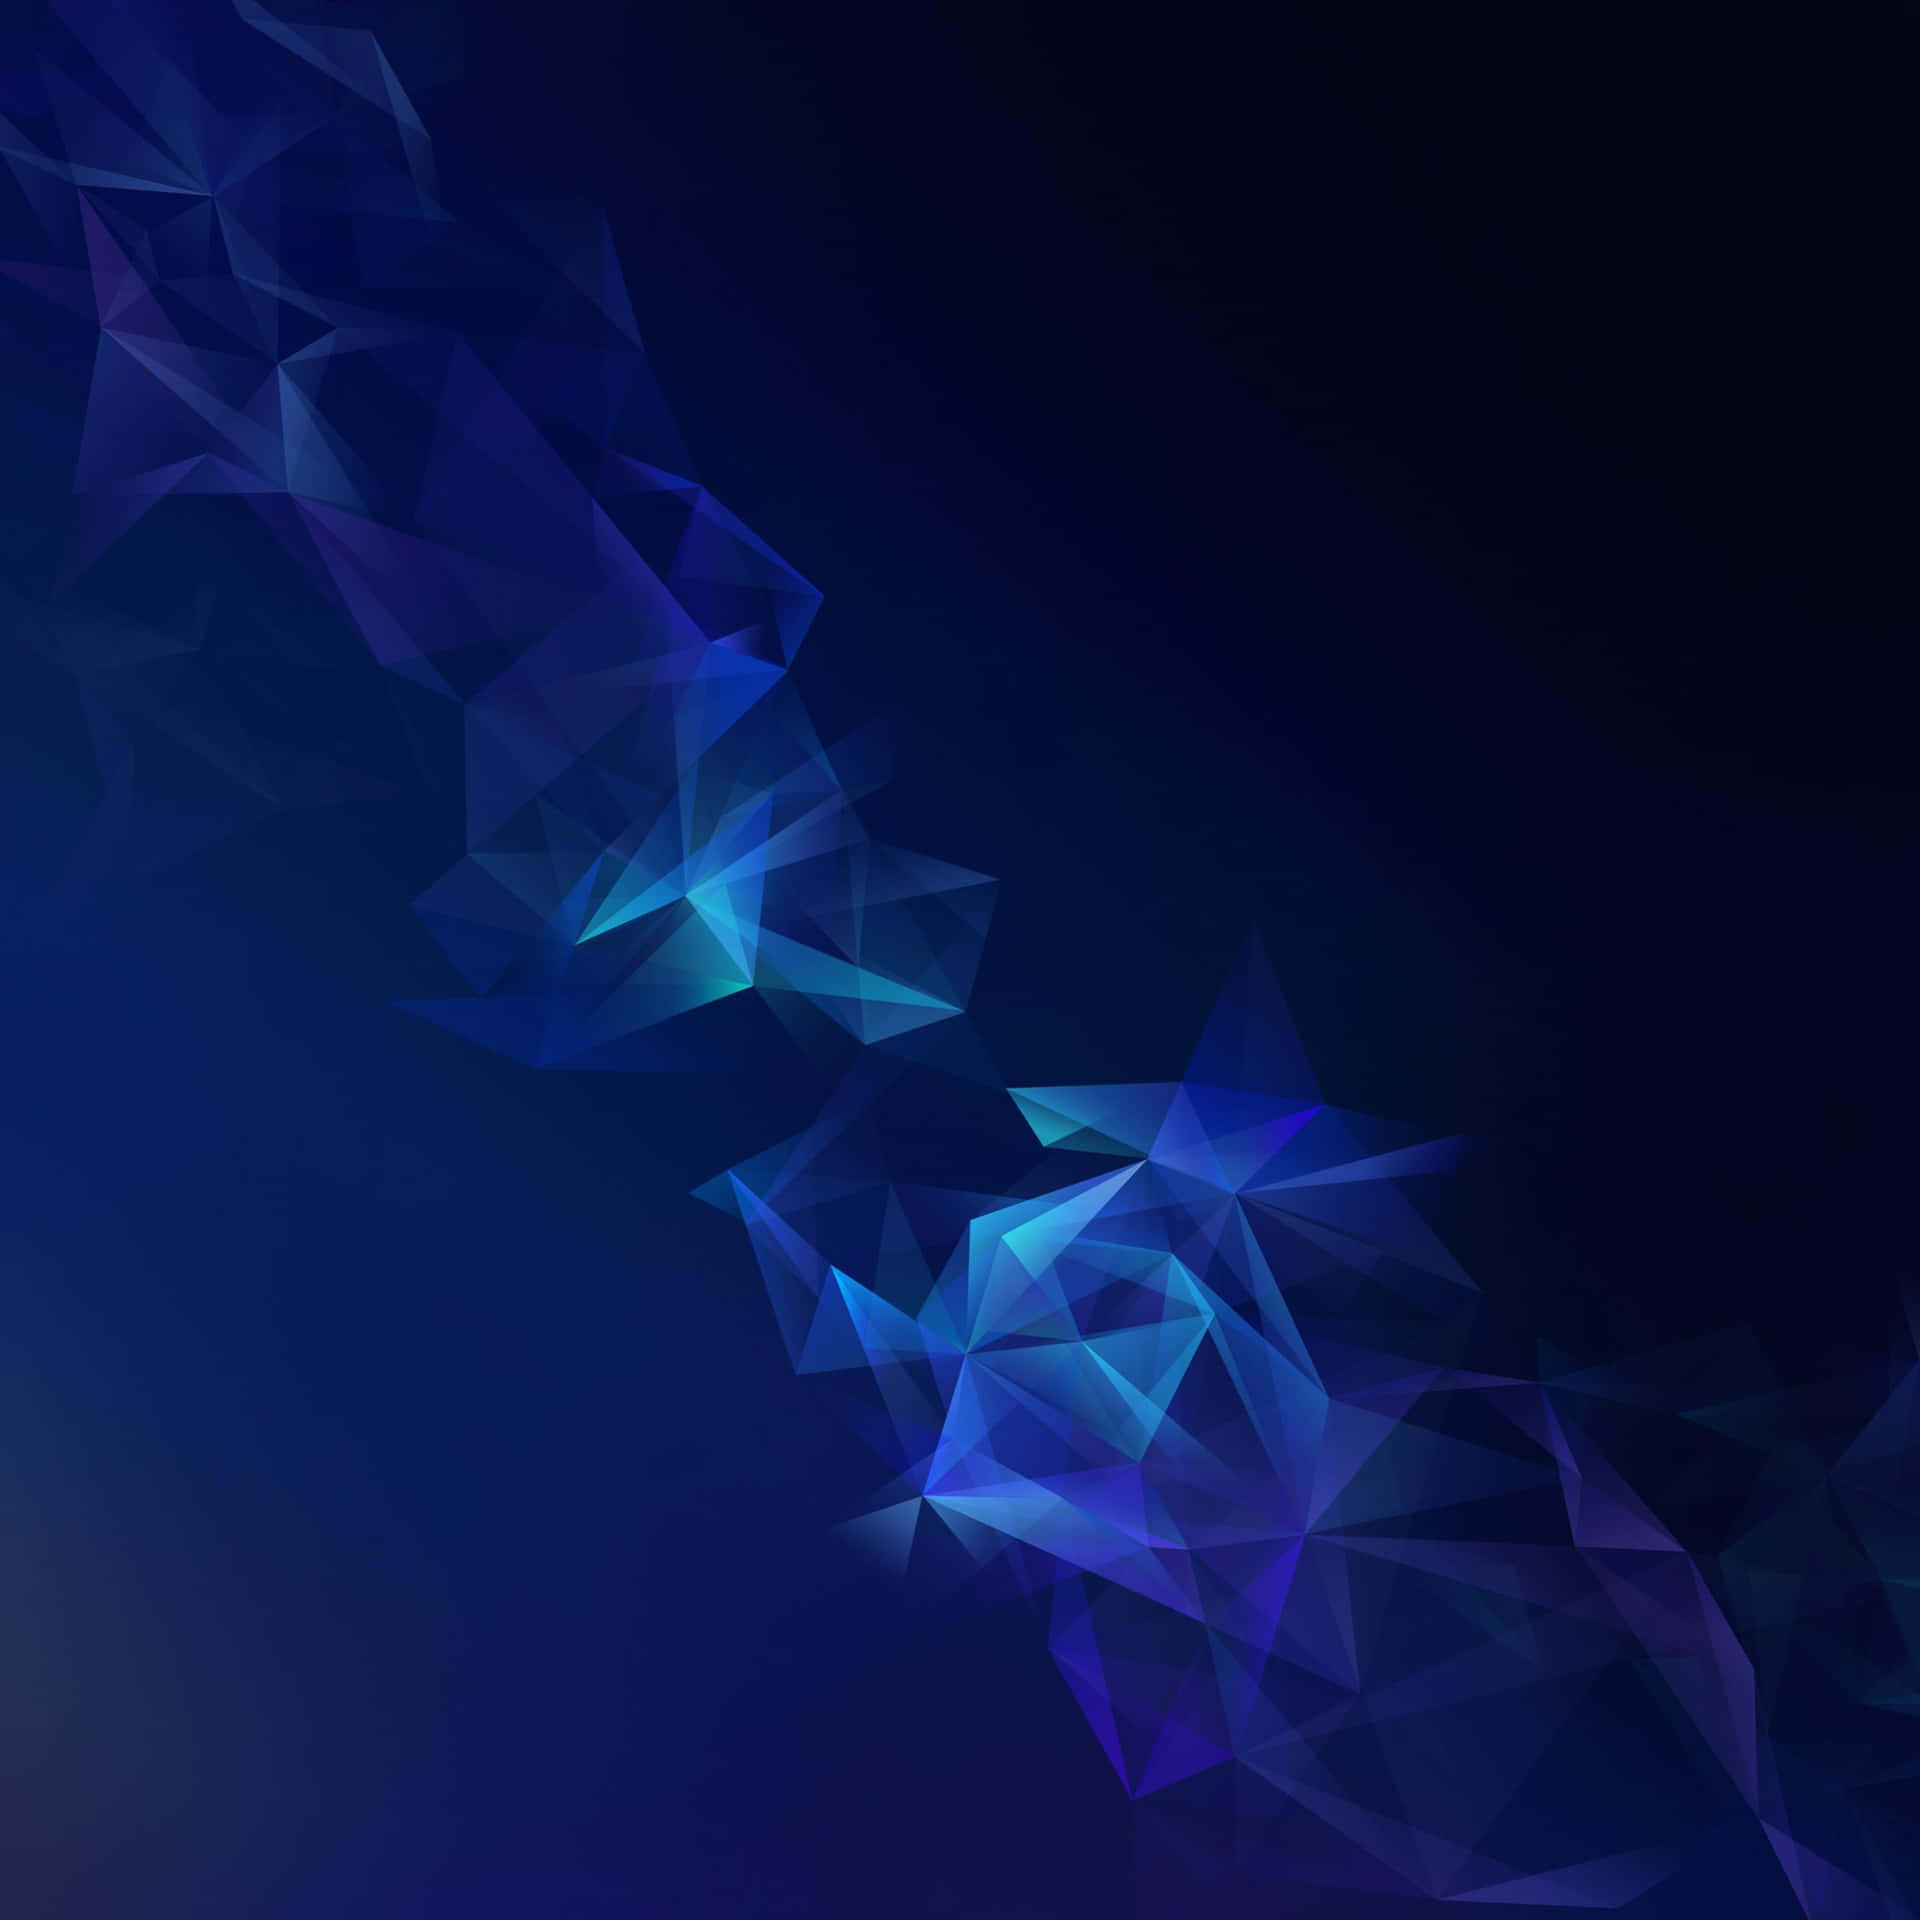 Samsungdex Con Formas Geométricas Azules Fondo de pantalla